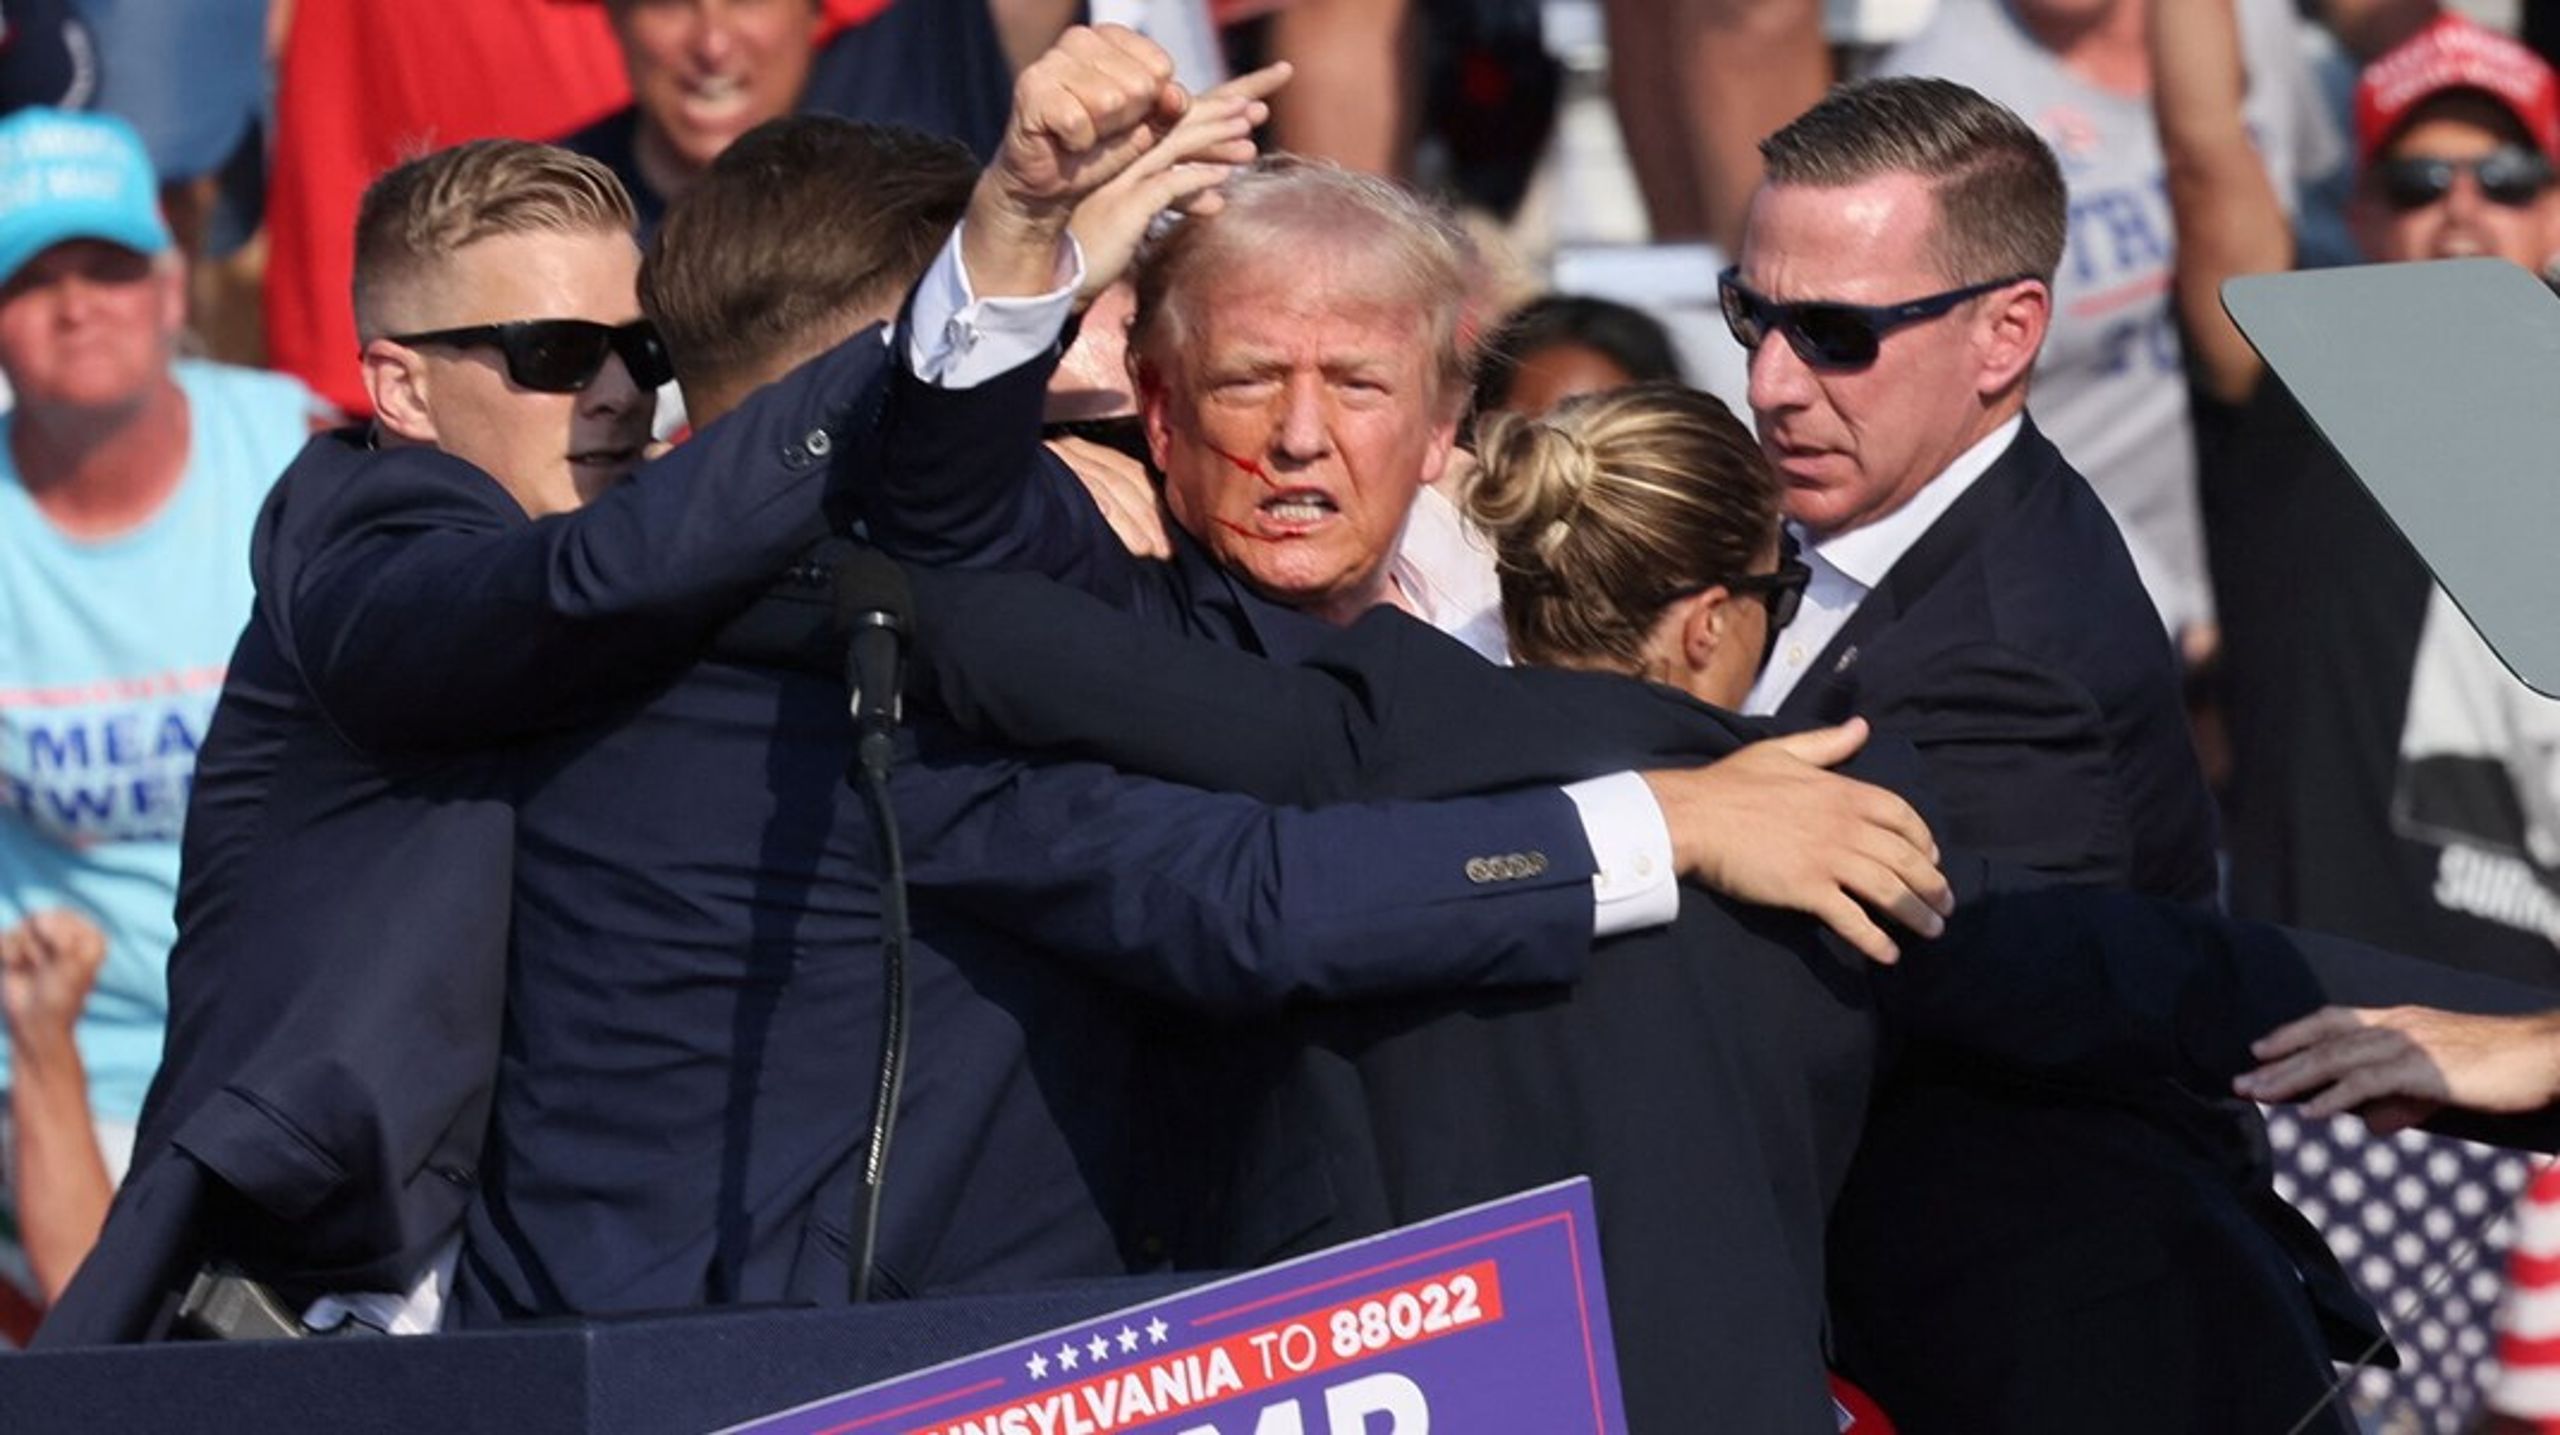 Billedet af den sårede Trump med blod i ansigtet, som omgivet af livvagter hæver sin knyttede næve i trods, er formentlig det stærkeste pressefoto i nyere tid.